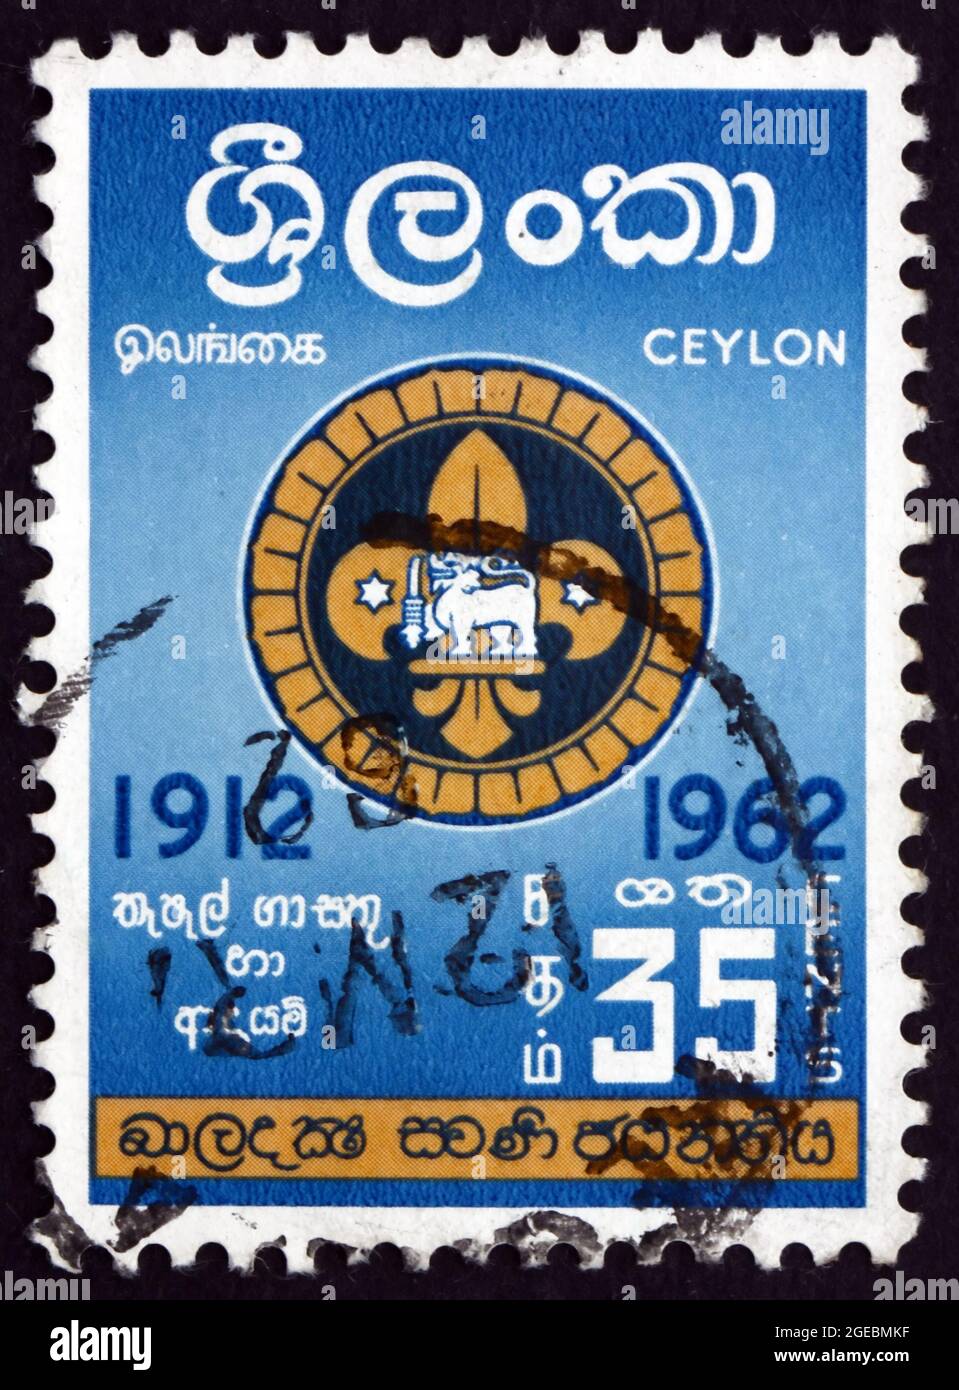 SRI LANKA - VERS 1962: Un timbre imprimé au Sri Lanka montre l'insigne des Scouts de Singhalese, Scouts de Ceylan, 50ème anniversaire, vers 1962 Banque D'Images